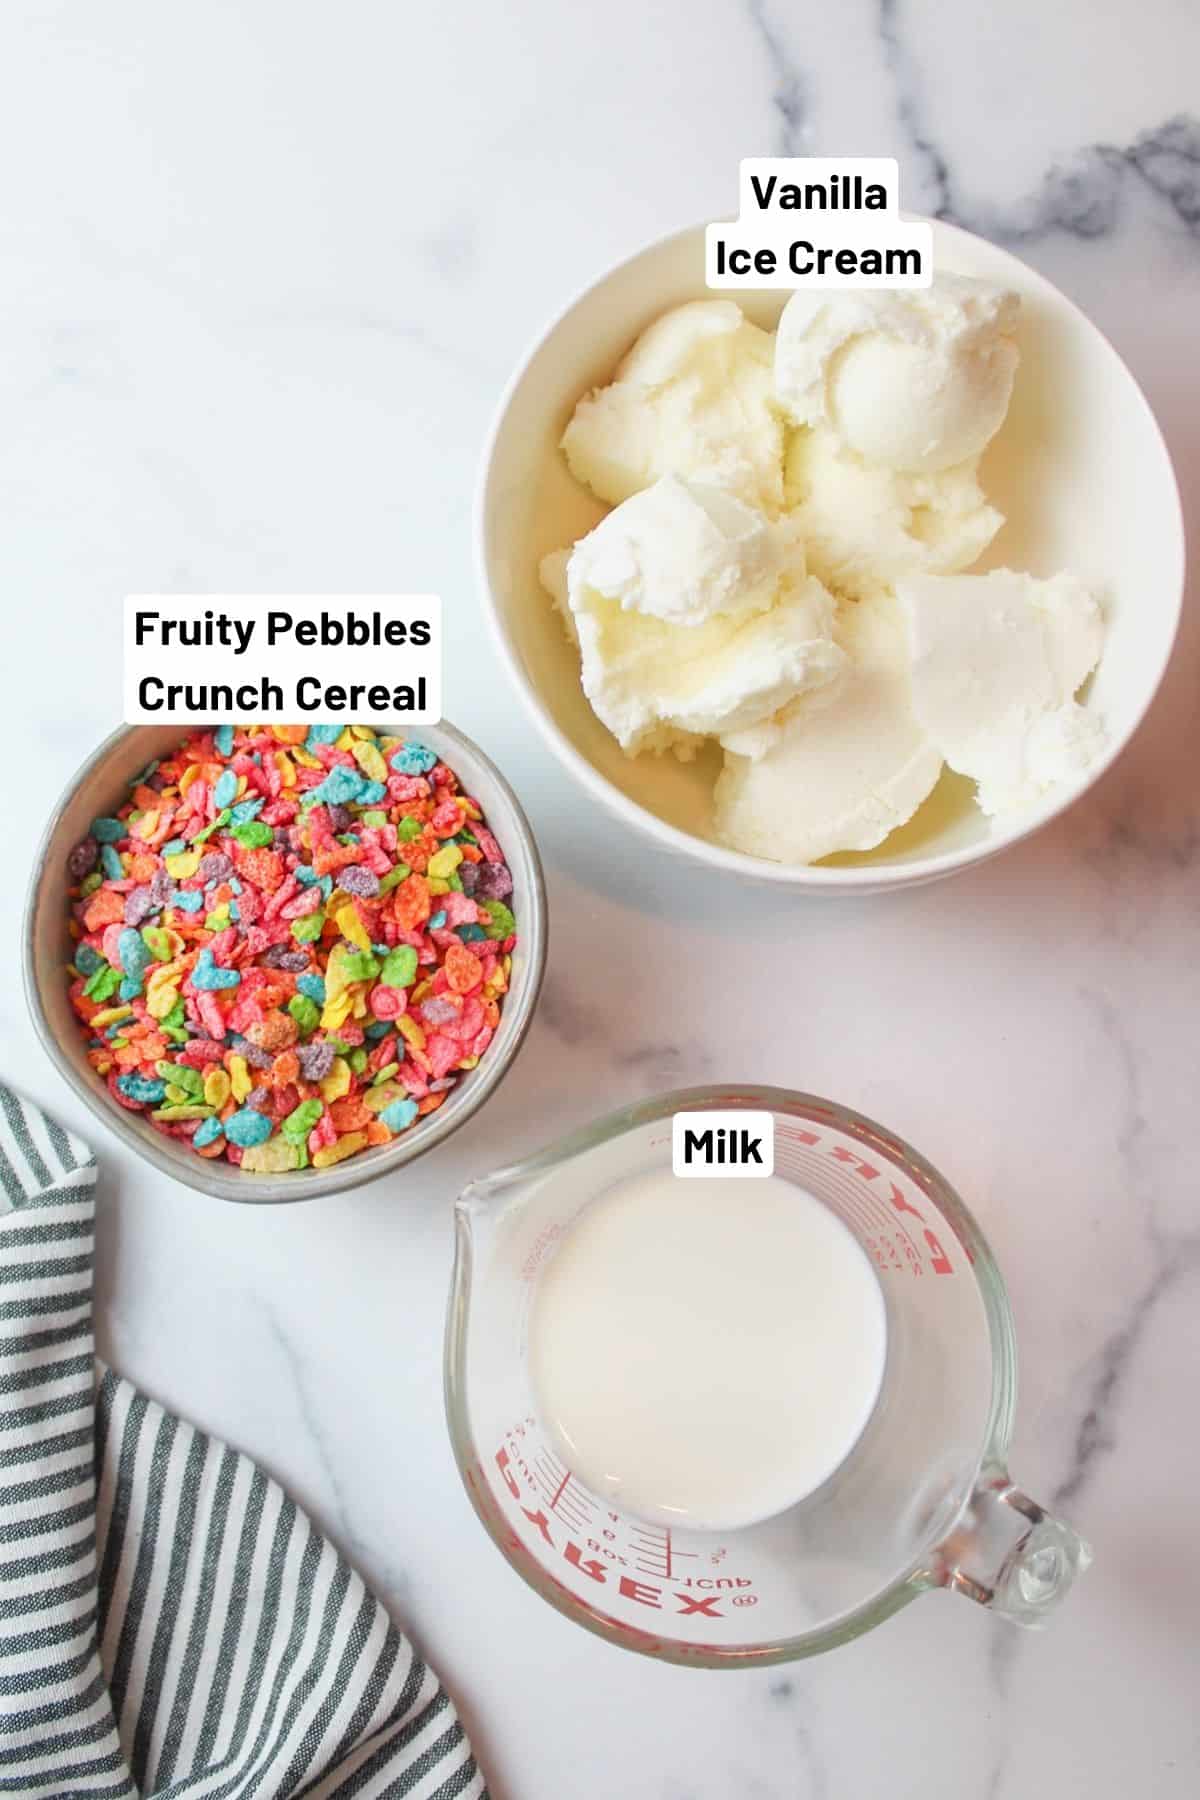 labeled ingredients needed to make fruity pebbles milkshake